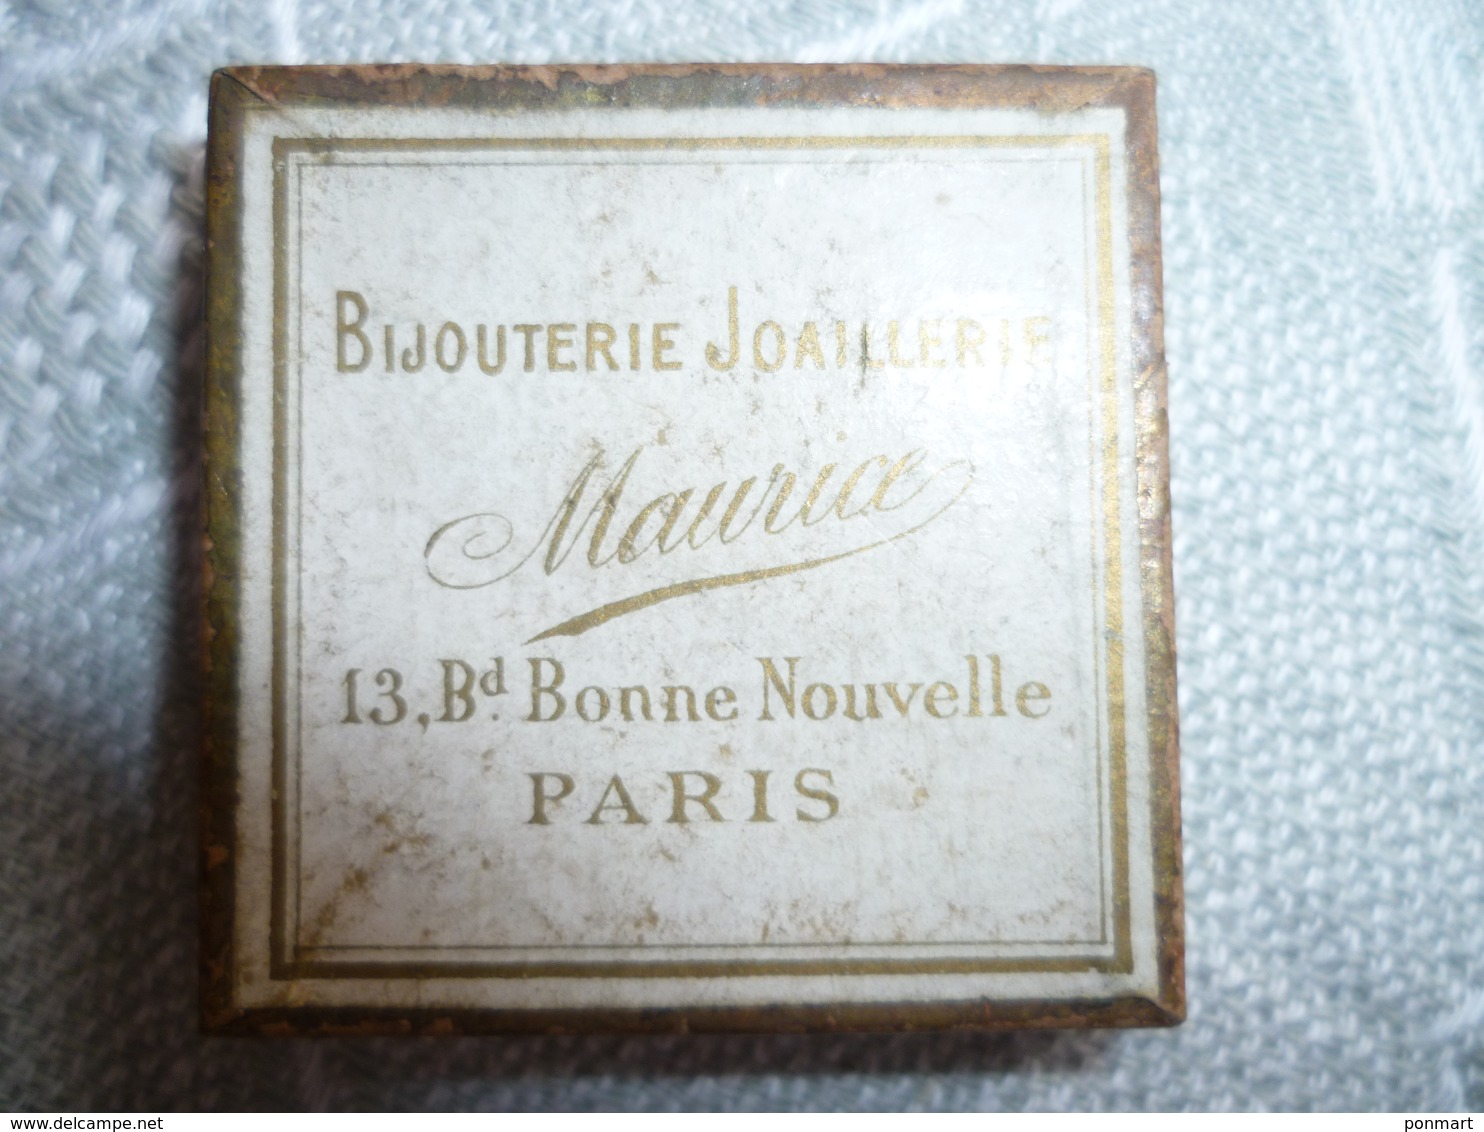 Boite Publicité Carré  "bijouterie Joaillerie Maurice  Paris - Dozen